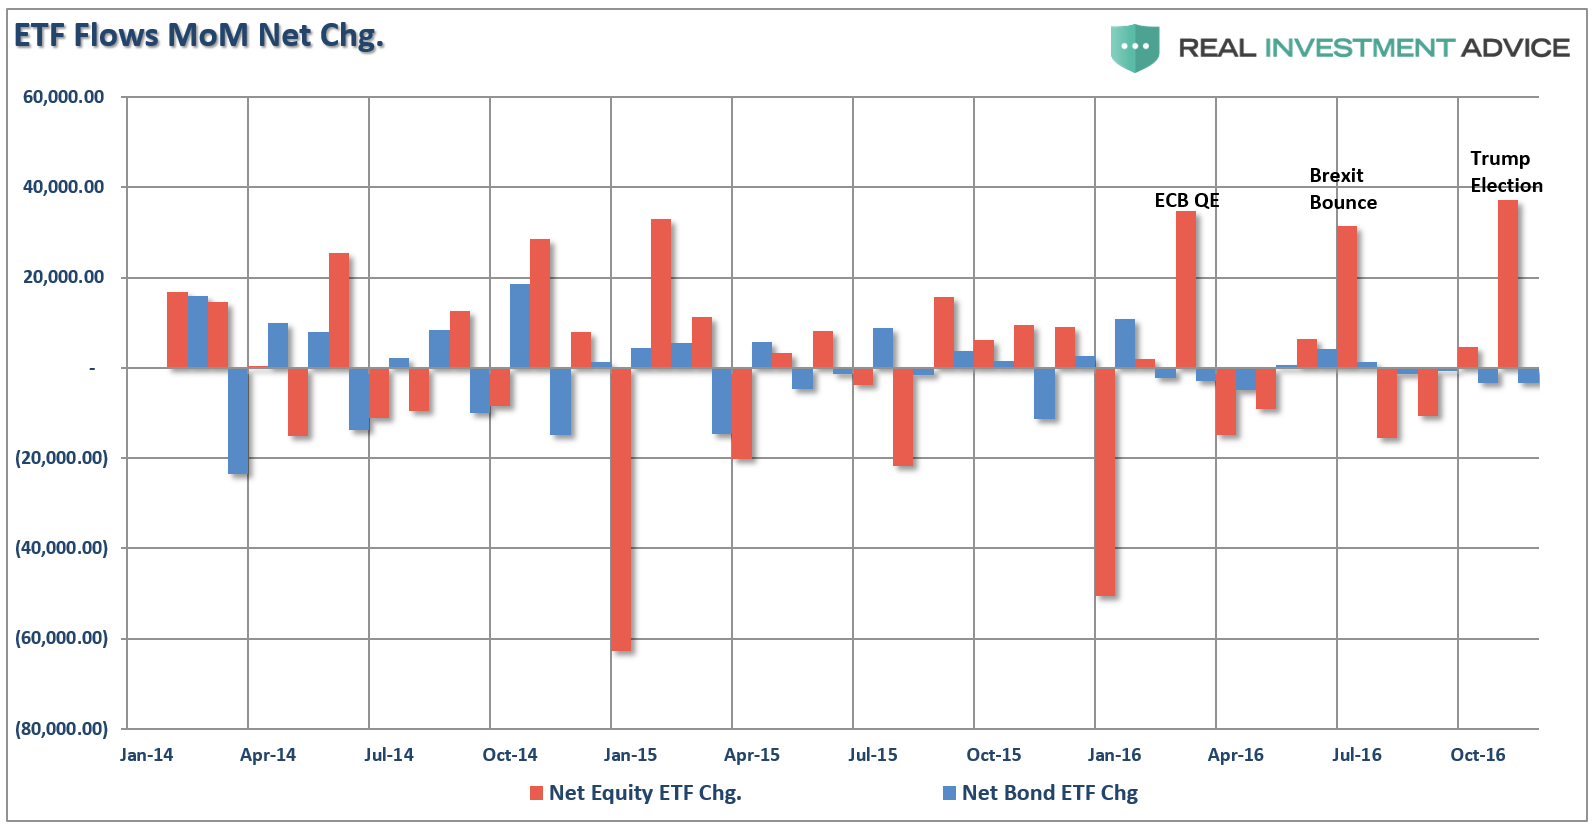 ETF Flows MoM Net Change 2014-2016